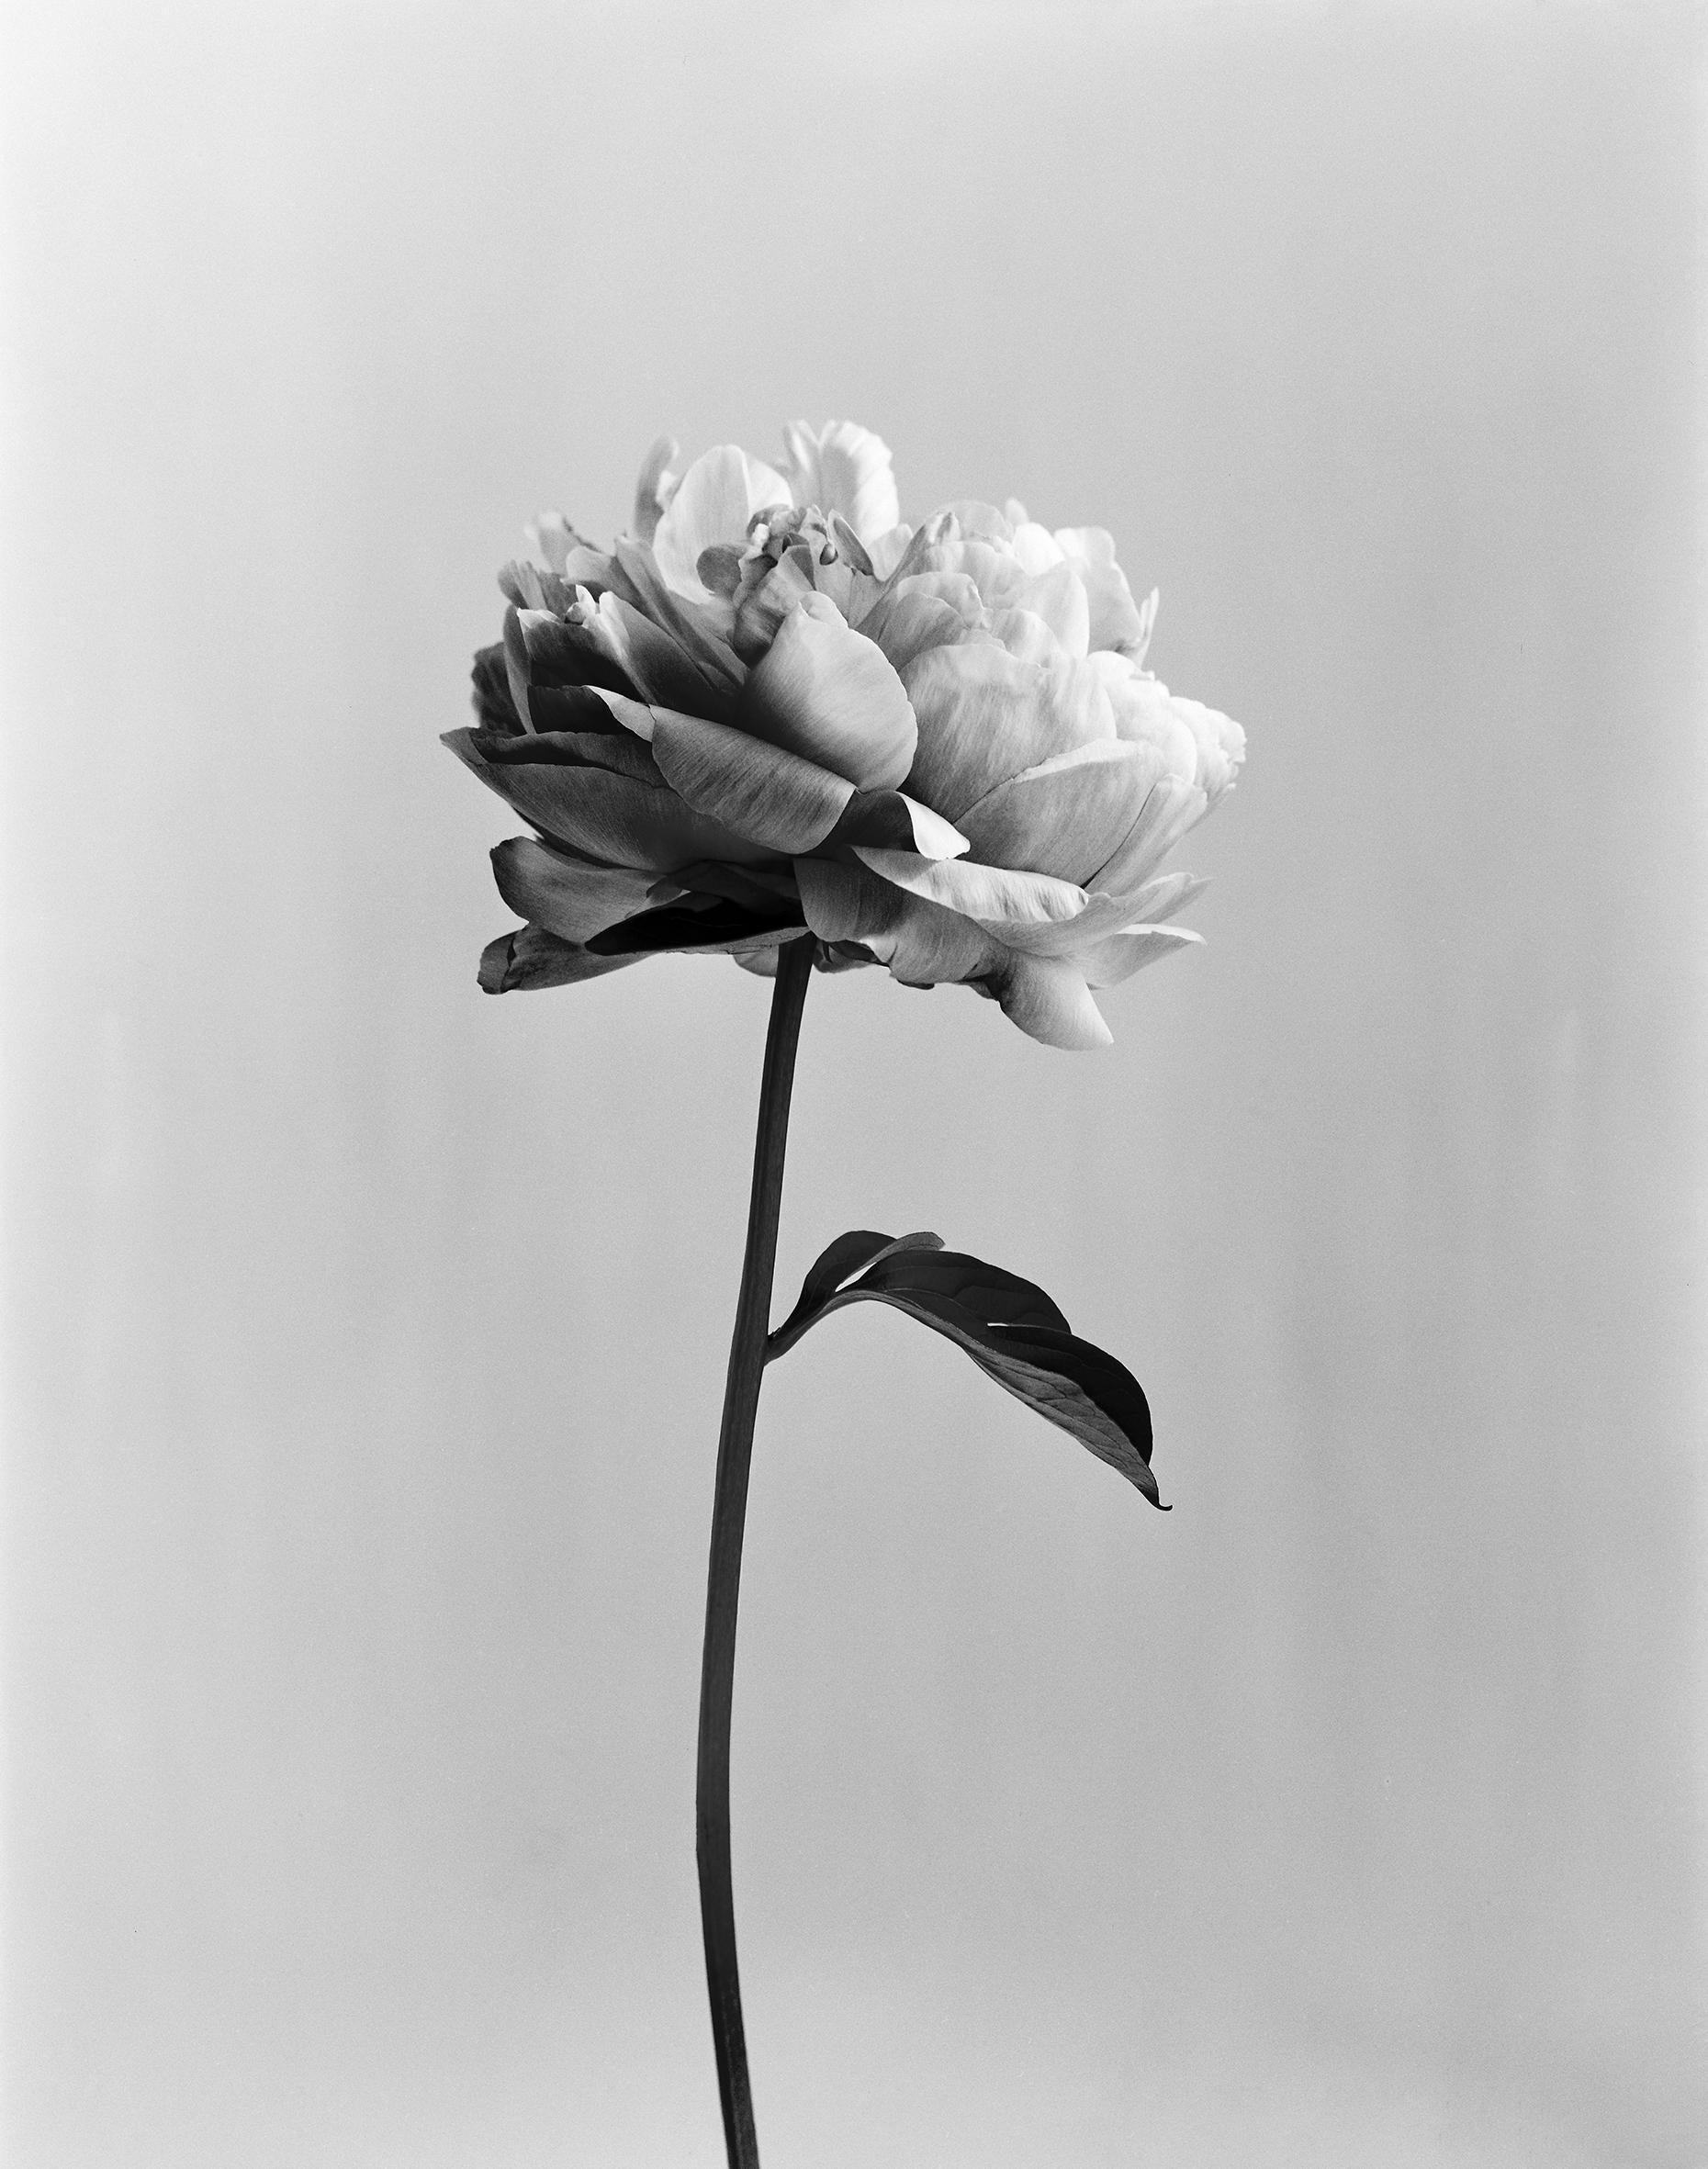 Peony no.3 – analoge Schwarz-Weiß-Blumenfotografie, limitierte Auflage von 15 Stück